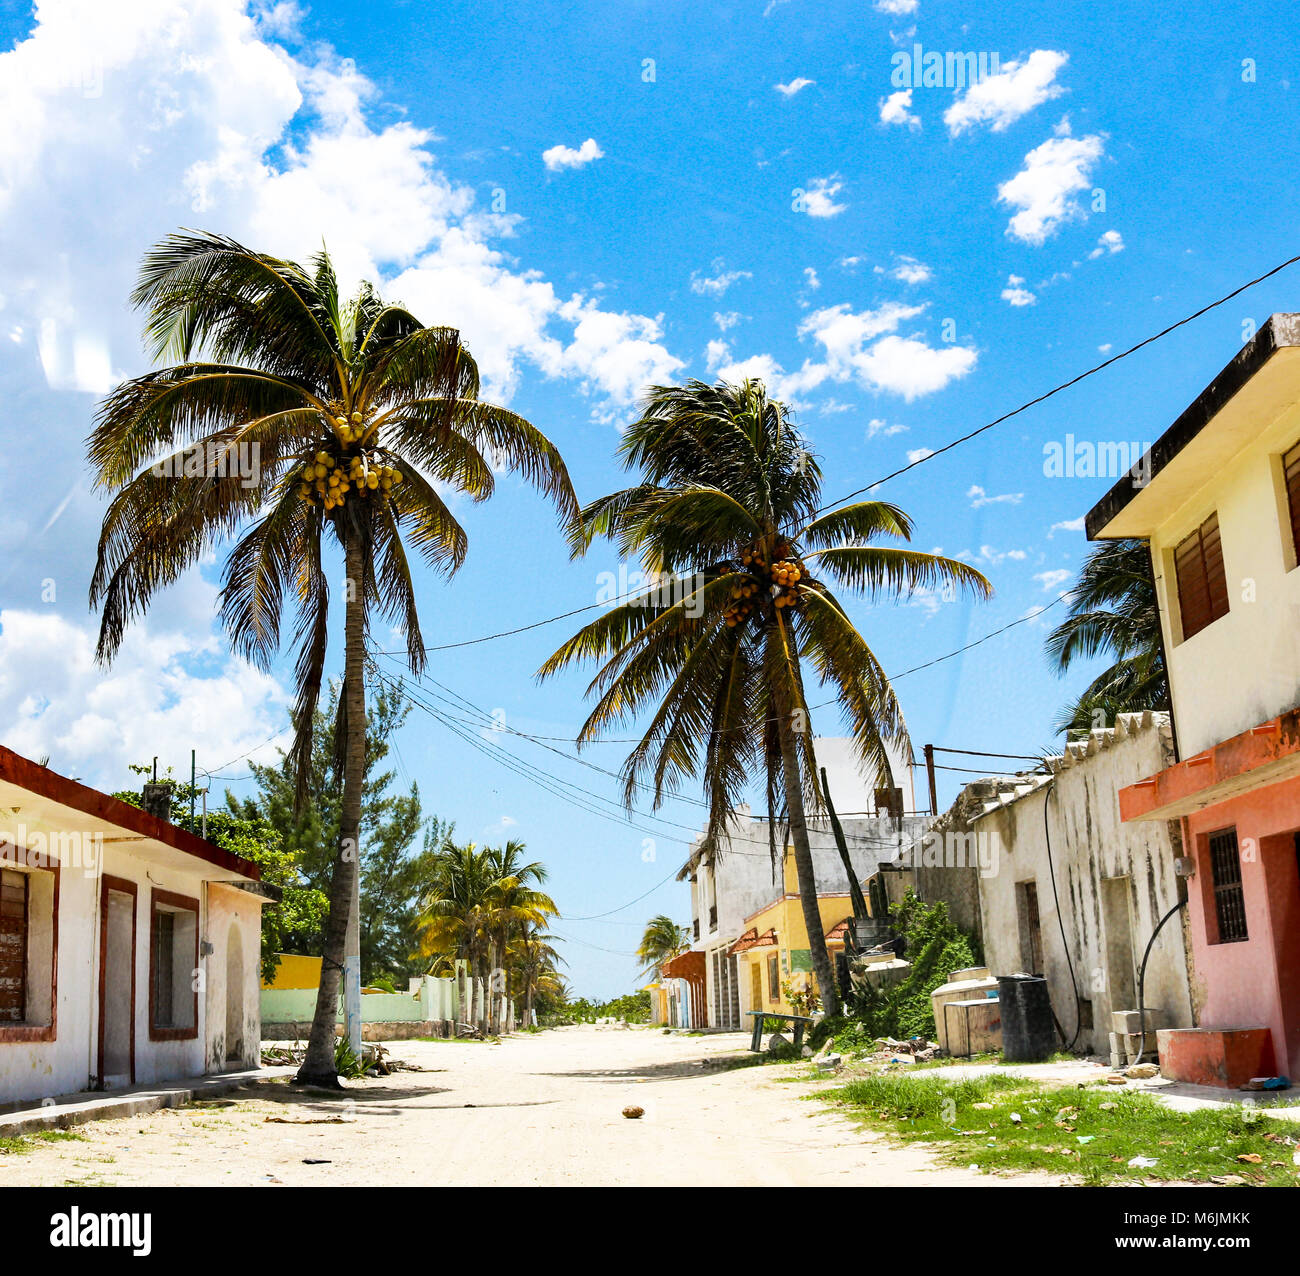 Einsame mexikanischen Schmutz der Straße im Dorf am Meer mit bunten Gebäuden und hohen Kokospalmen und eine Kokosnuss Festlegung in der Mitte der Straße Stockfoto